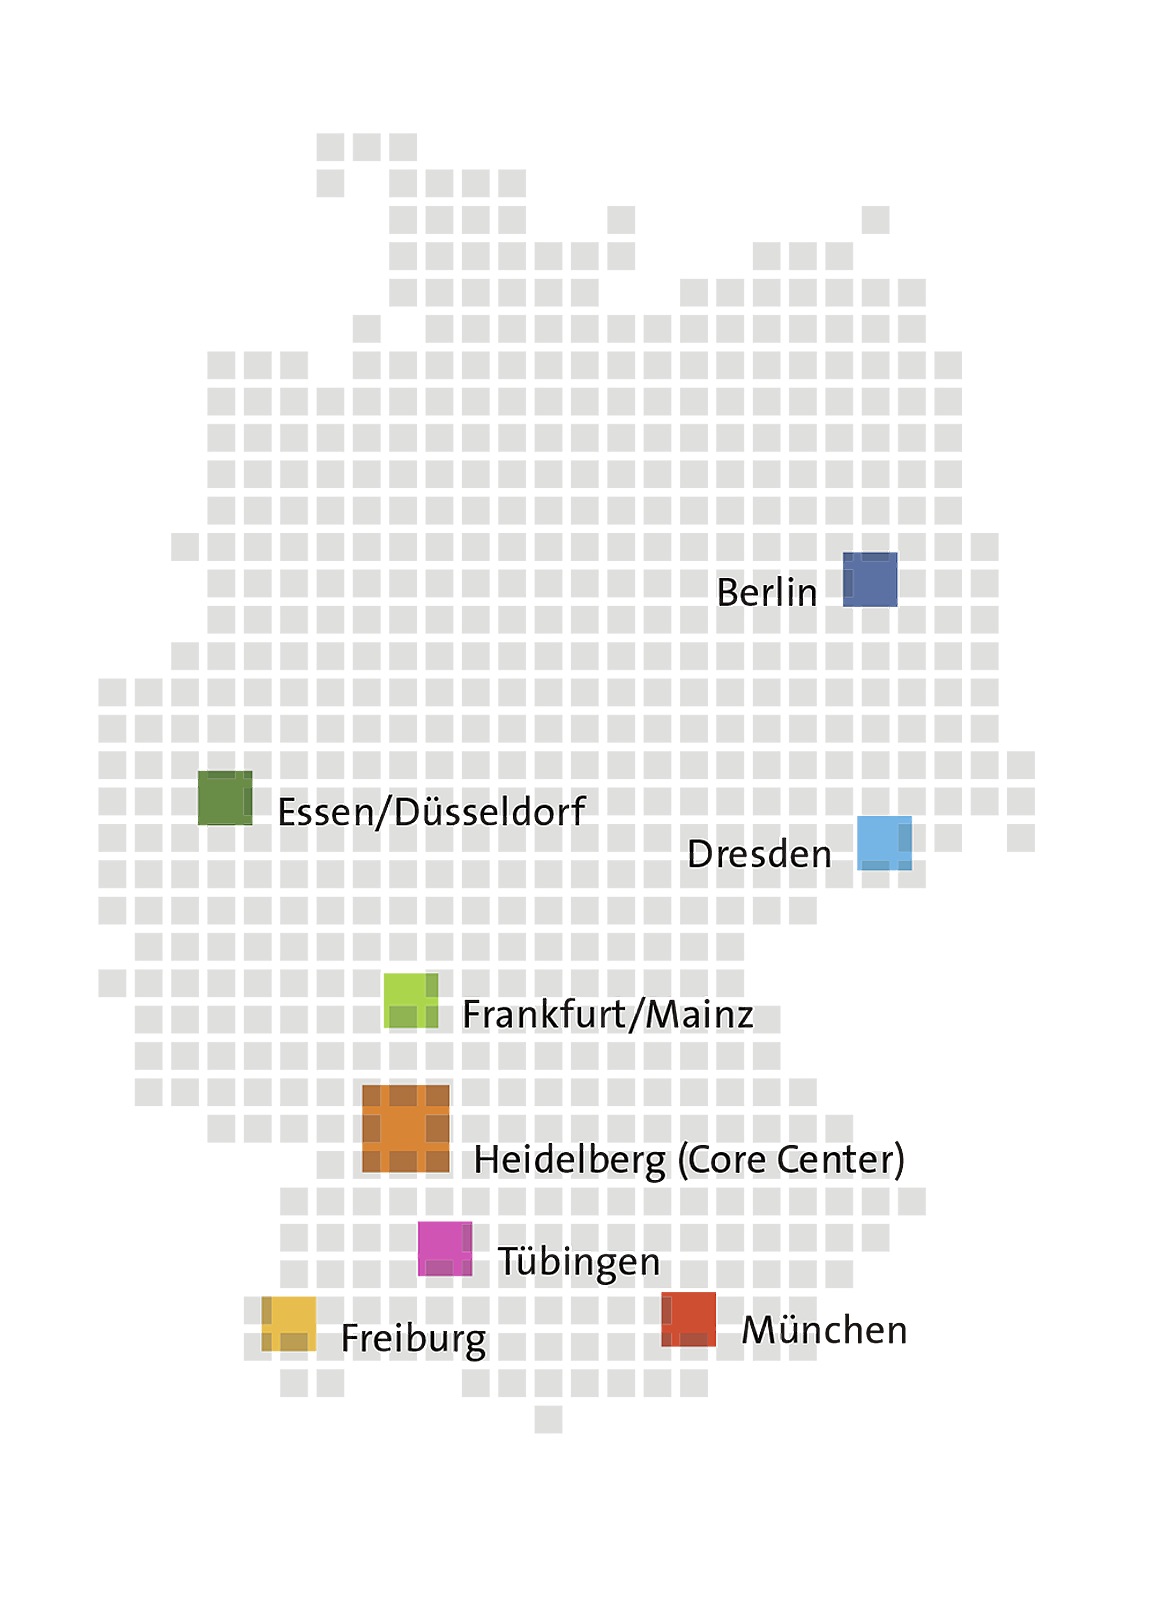 Landkarte der sieben Standorte des Deutschen Konsortiums für Translationale Krebsforschung (DKTK).